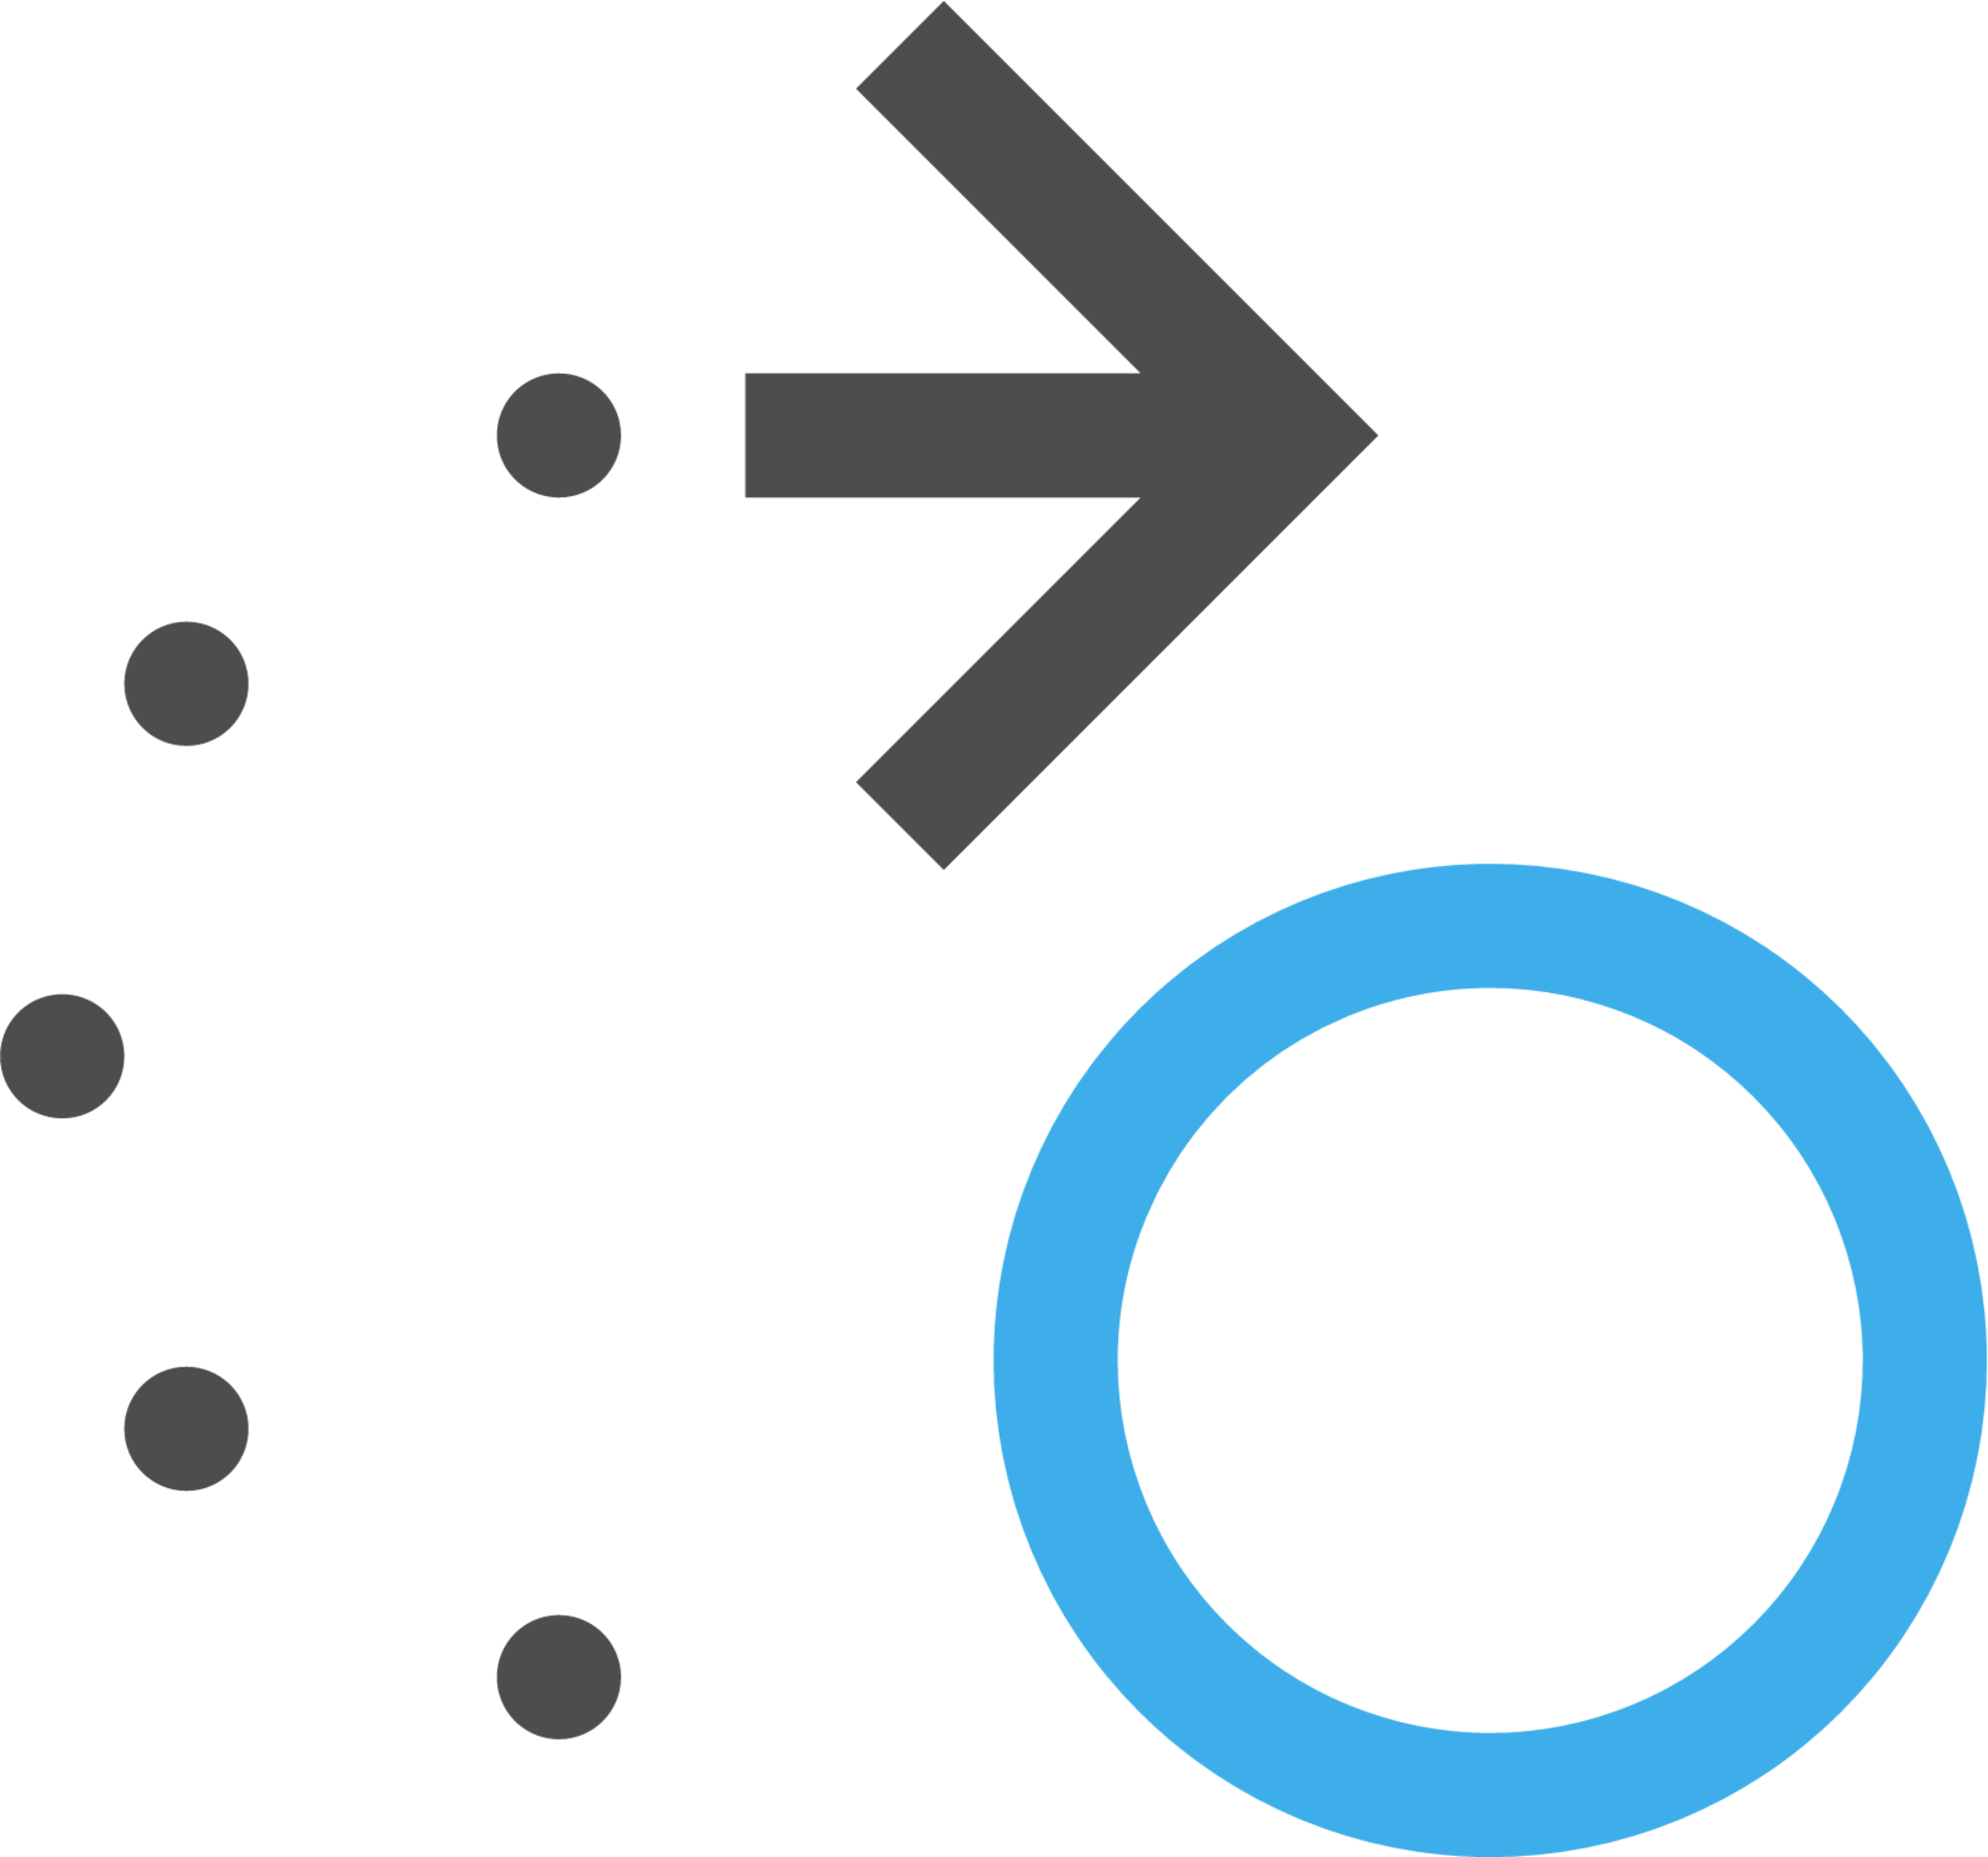 snap nodes rotation center icon